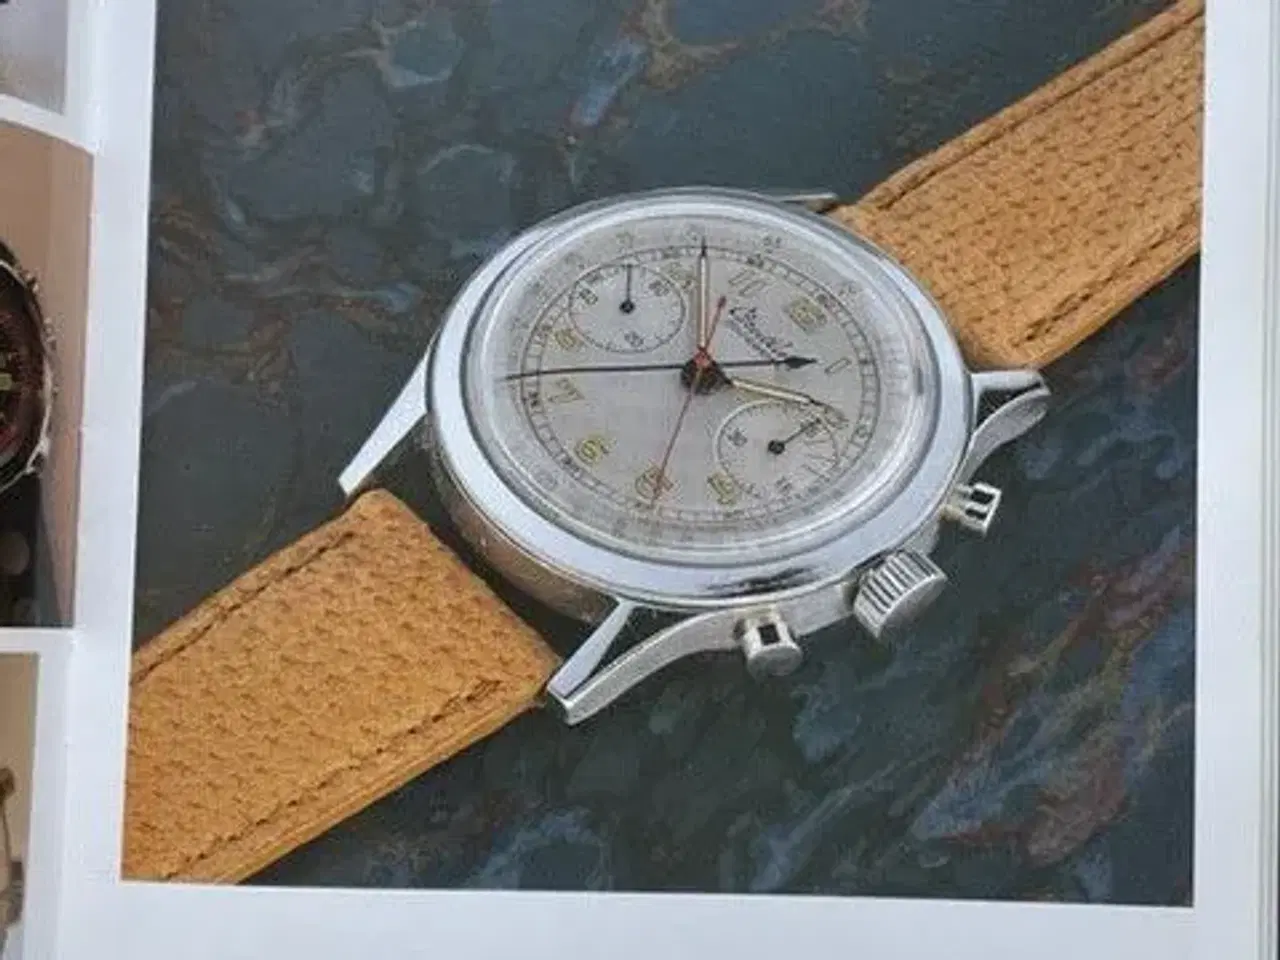 Billede 4 - Breitling ure